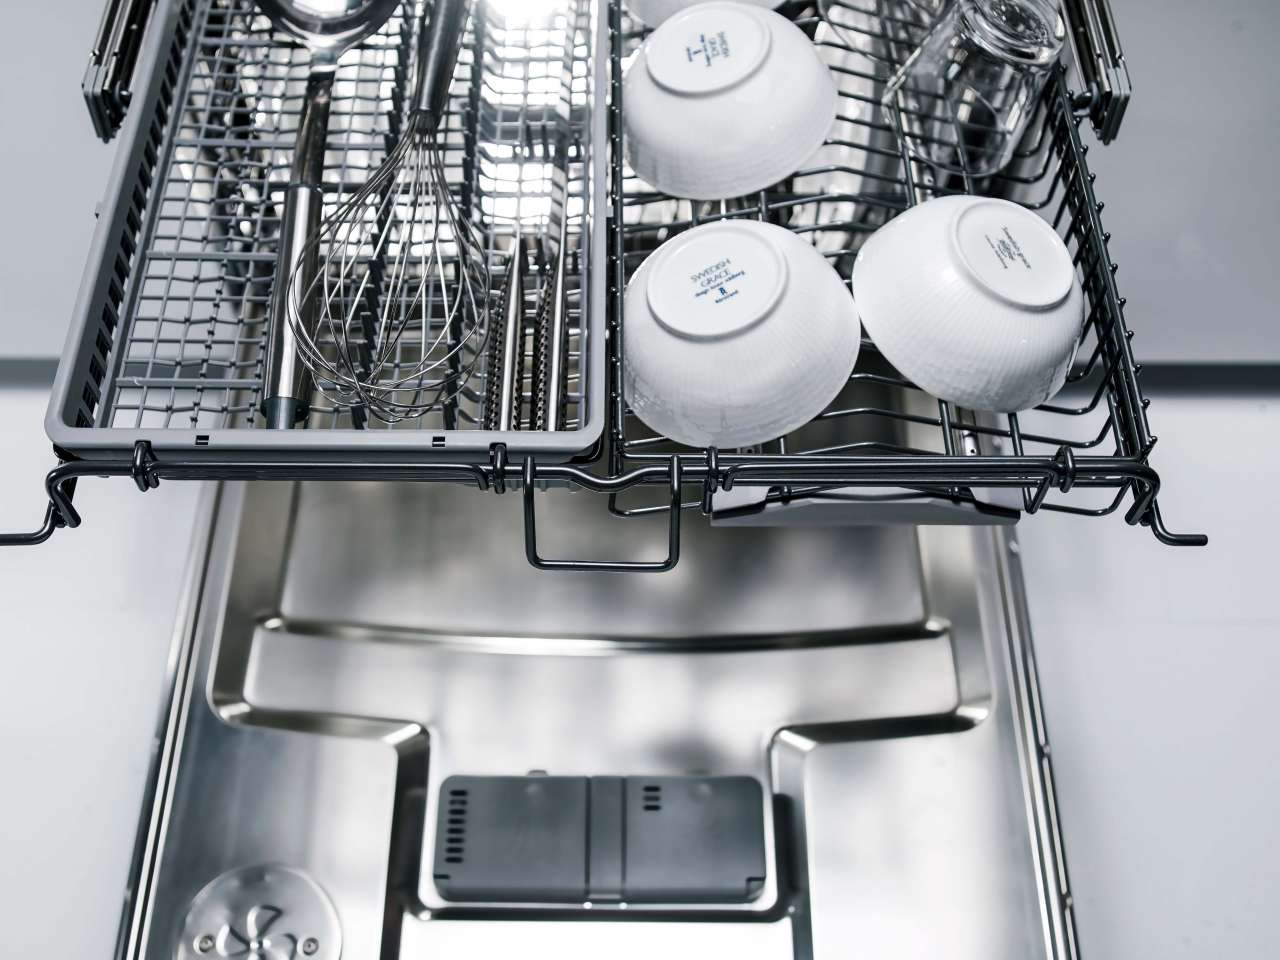 Посудомоечные машины 3 корзины. Asko 1303 посудомоечной машина. Посудомоечная машина Asko dfi746u. Посудомоечная машина Asko dfi777uxxl. Посудомоечная машина Asko dfi433b/1.